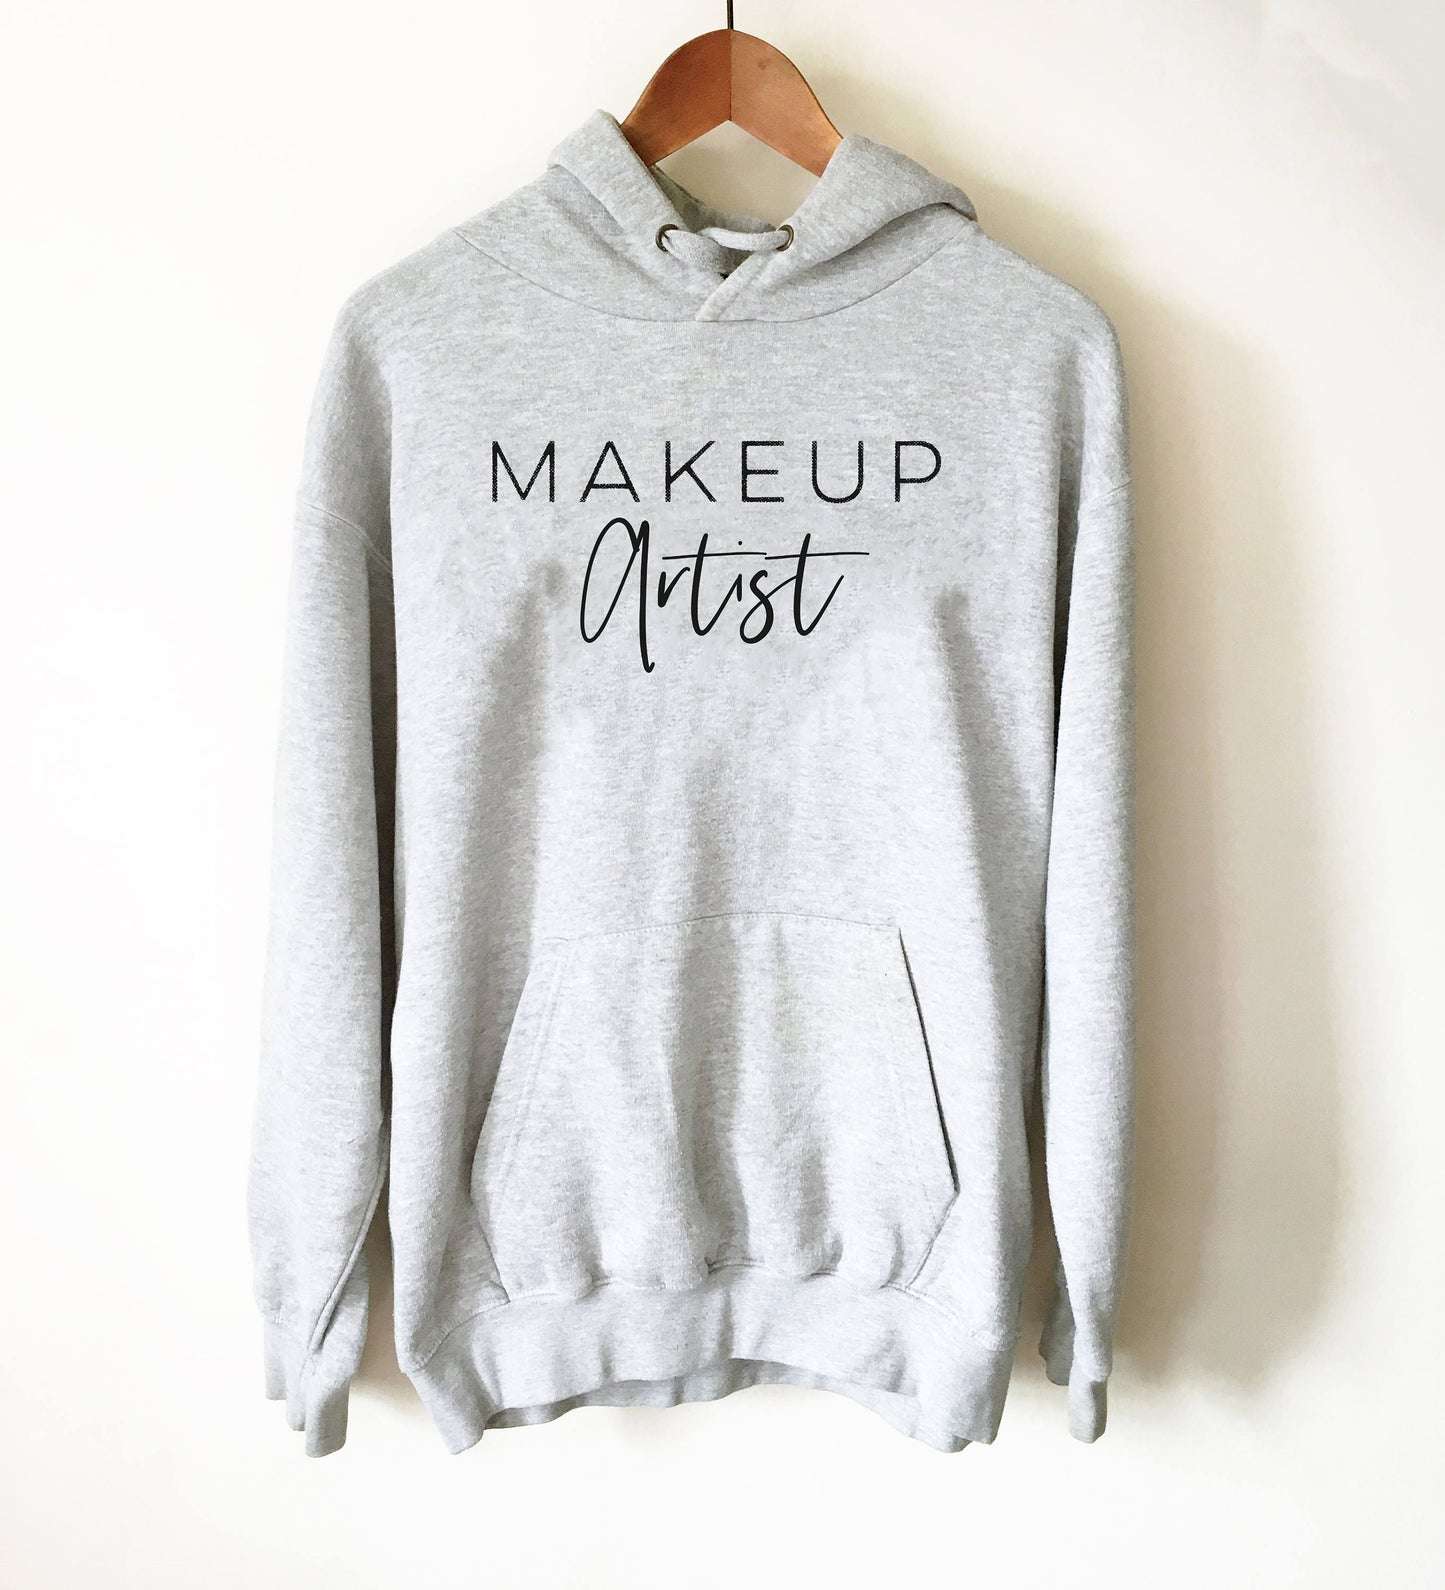 Makeup Artist Hoodie - Mascara T-Shirt, Lipstick T Shirt, Makeup Shirt, Muscles And Mascara, Lash Lipstick Shirt, Makeup Artist Shirt